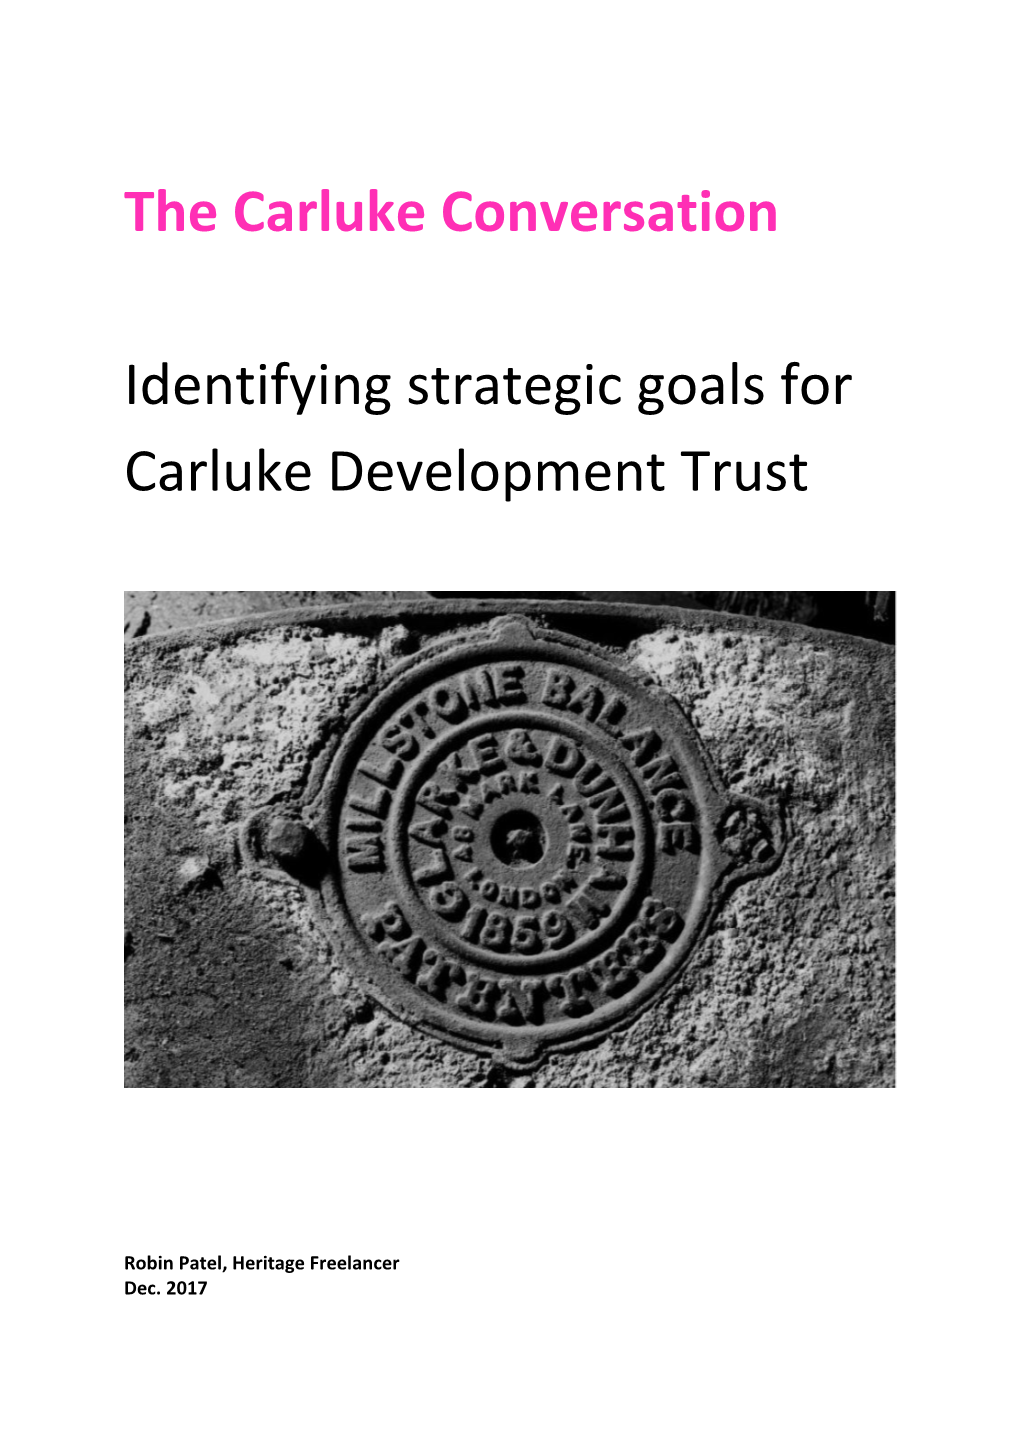 Identifying Strategic Goals for Carluke Development Trust